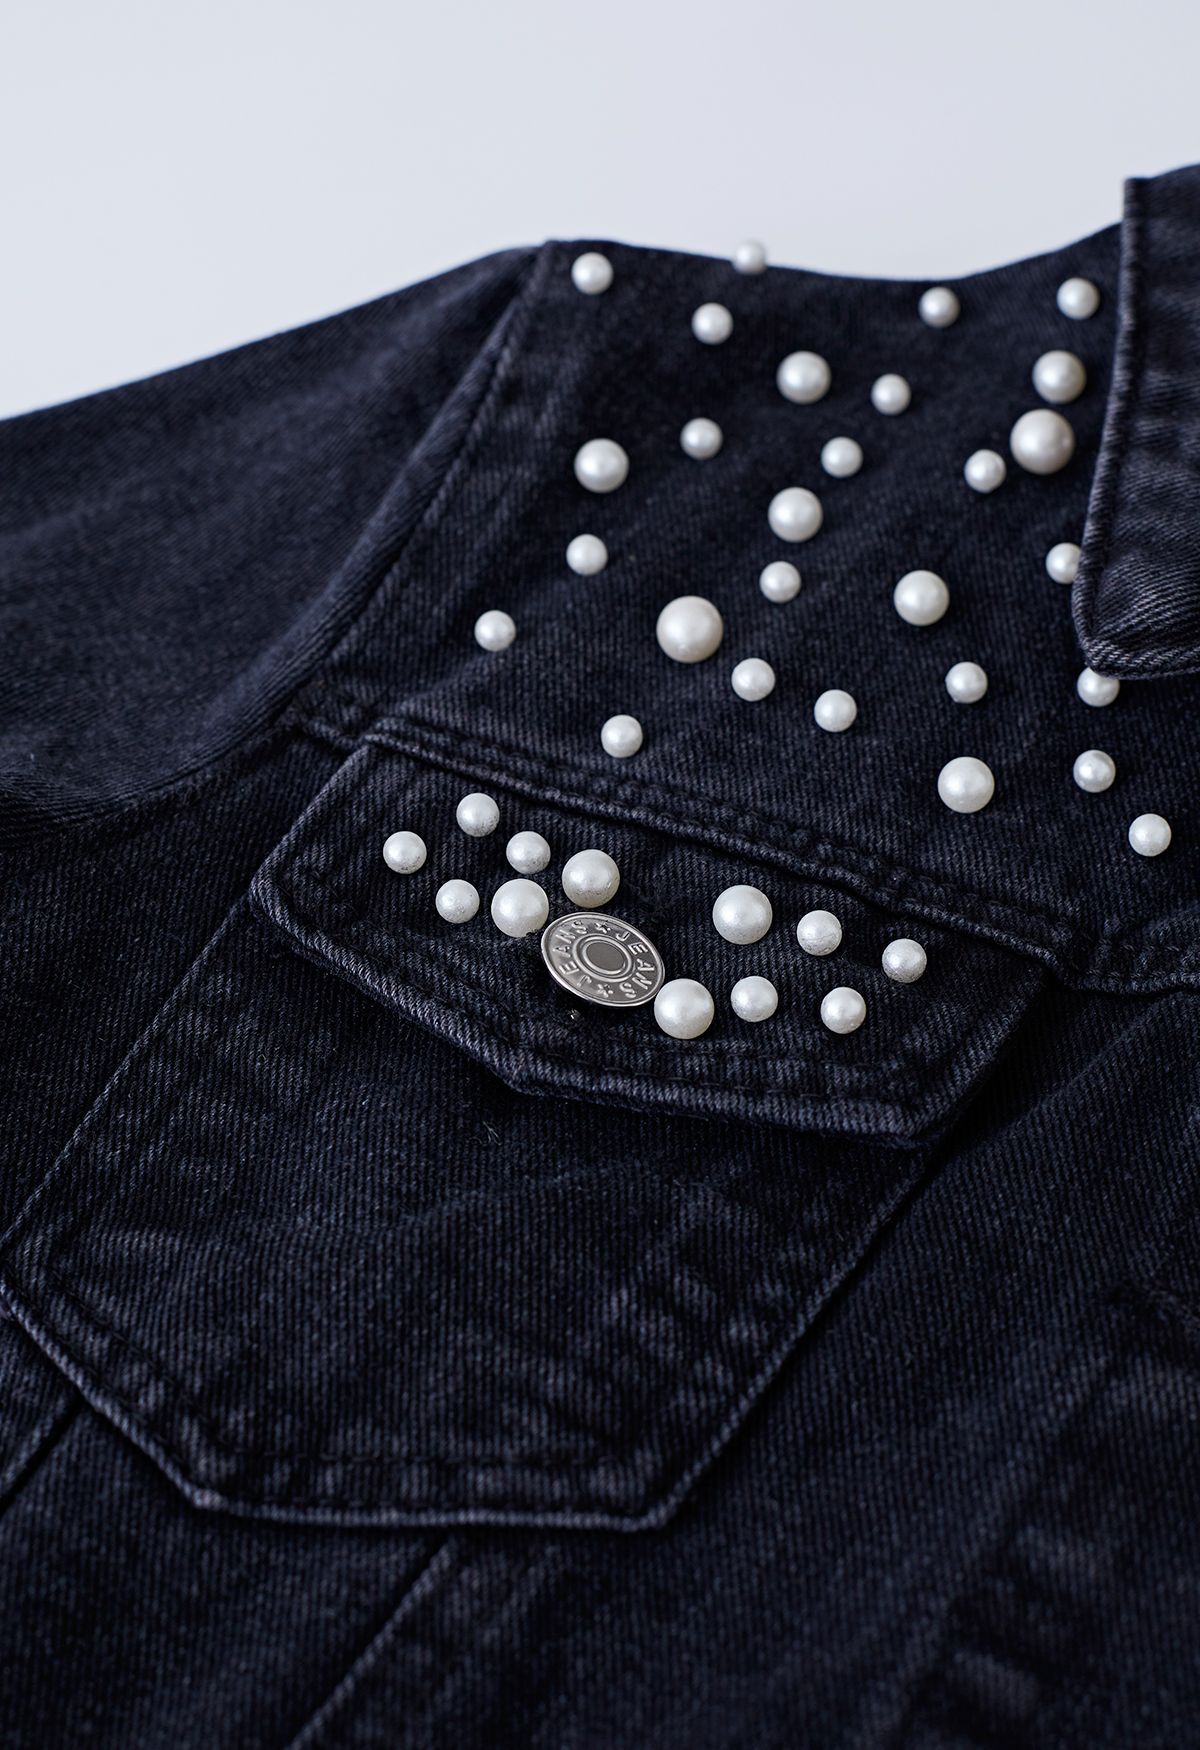 Veste en jean avec poche à rabat ornée de perles en noir